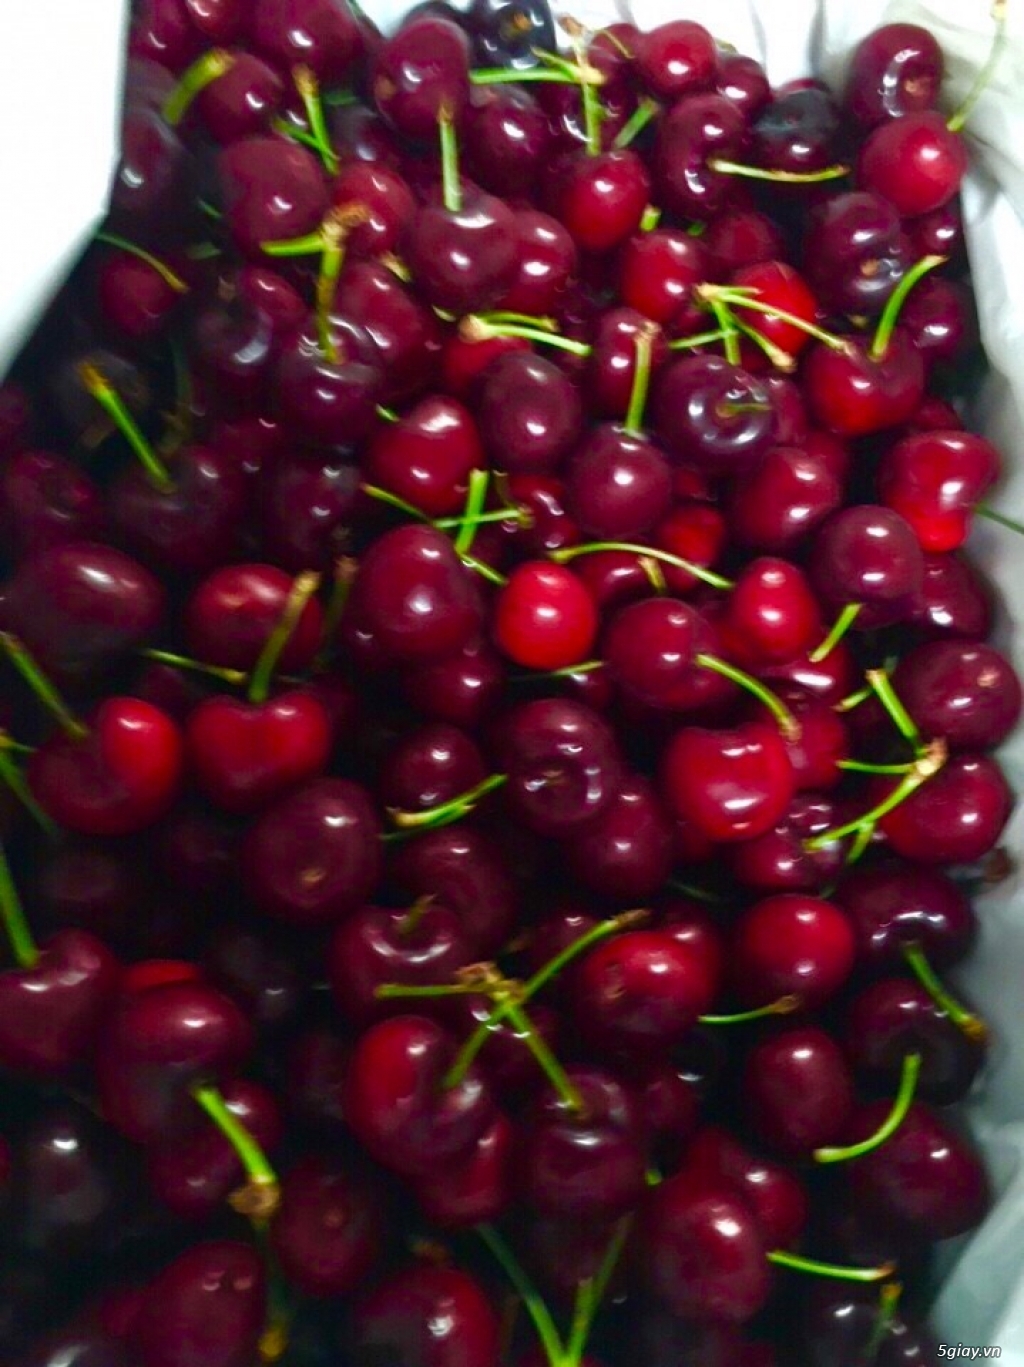 Bán cherry Mỹ giá rẻ nhất Sài Gòn